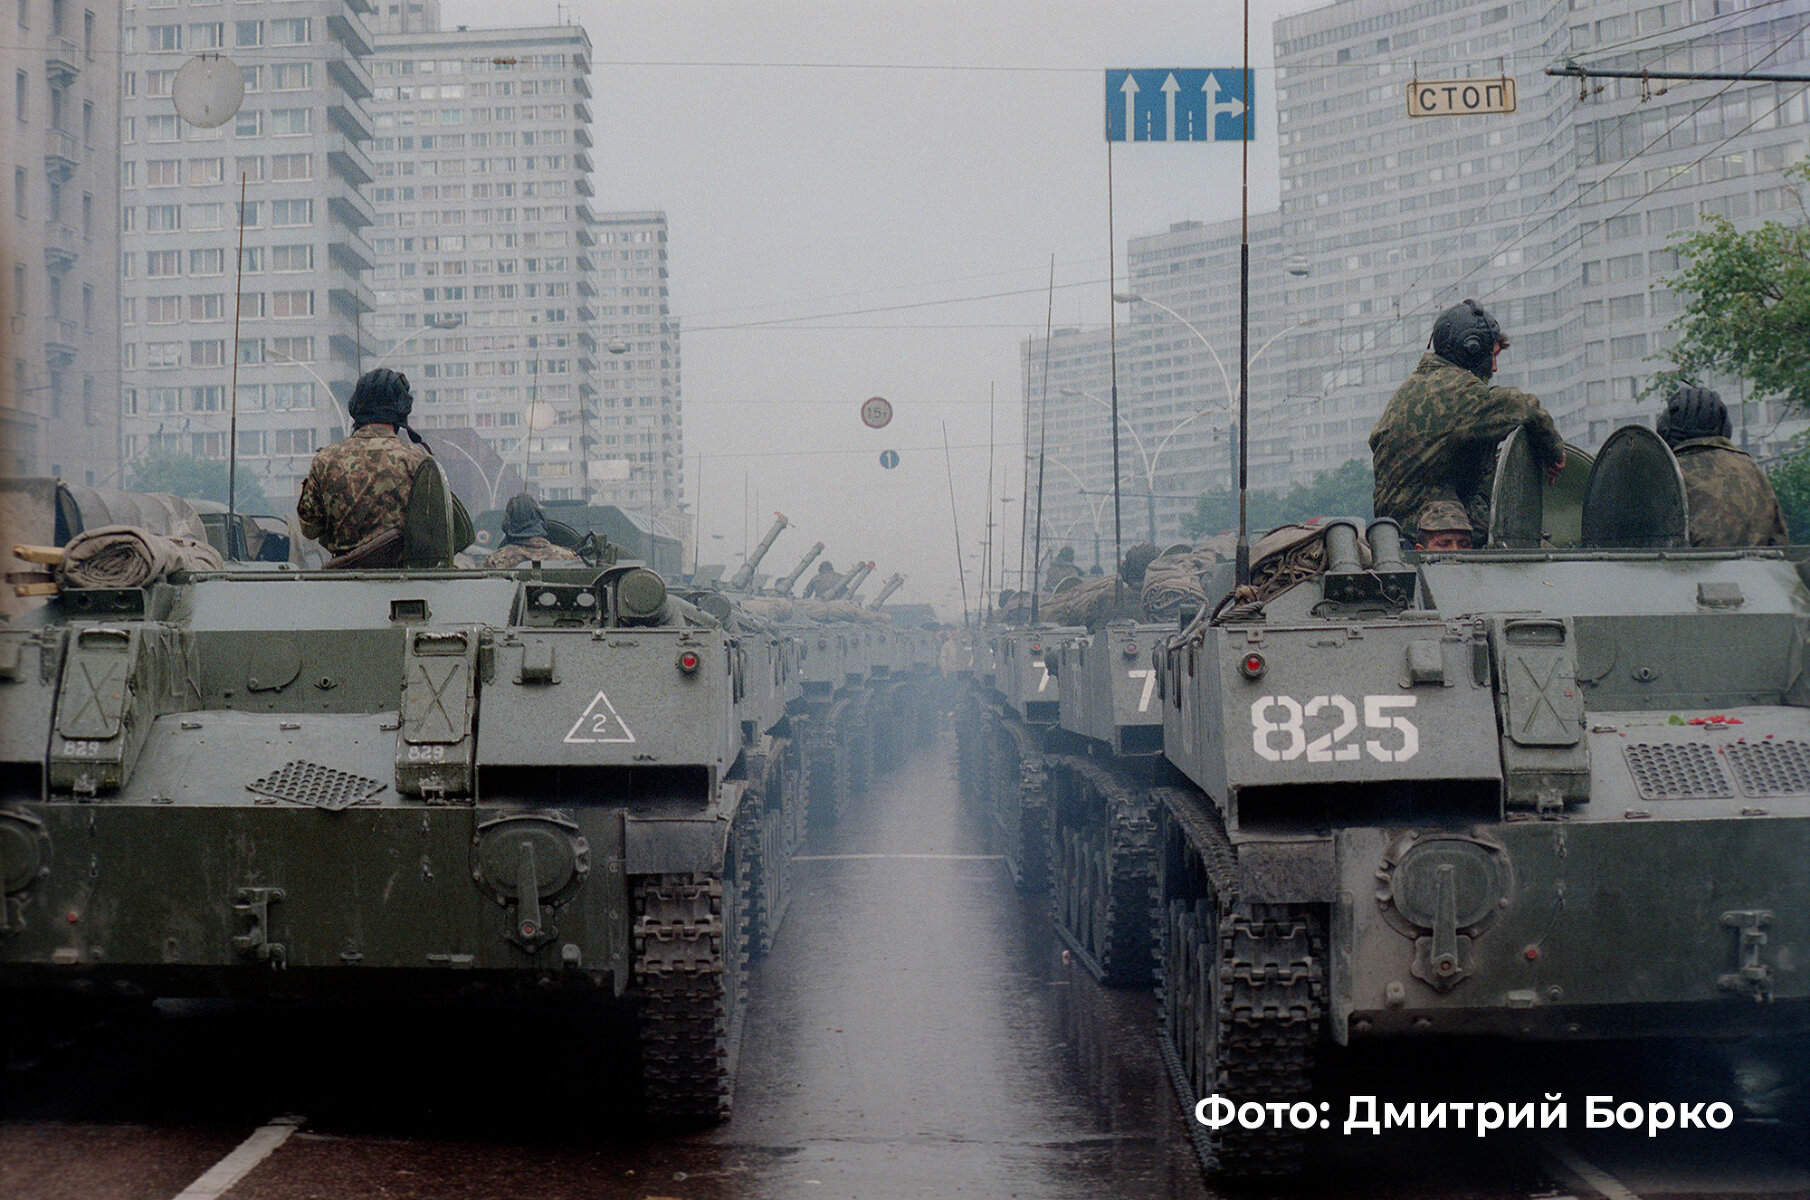 <p>Танки на проспекте Калинина (сейчас &mdash; улица Новый Арбат), 20 августа 1991 года. Они должны были контролировать соблюдения комендантского часа в Москве.&nbsp;</p>